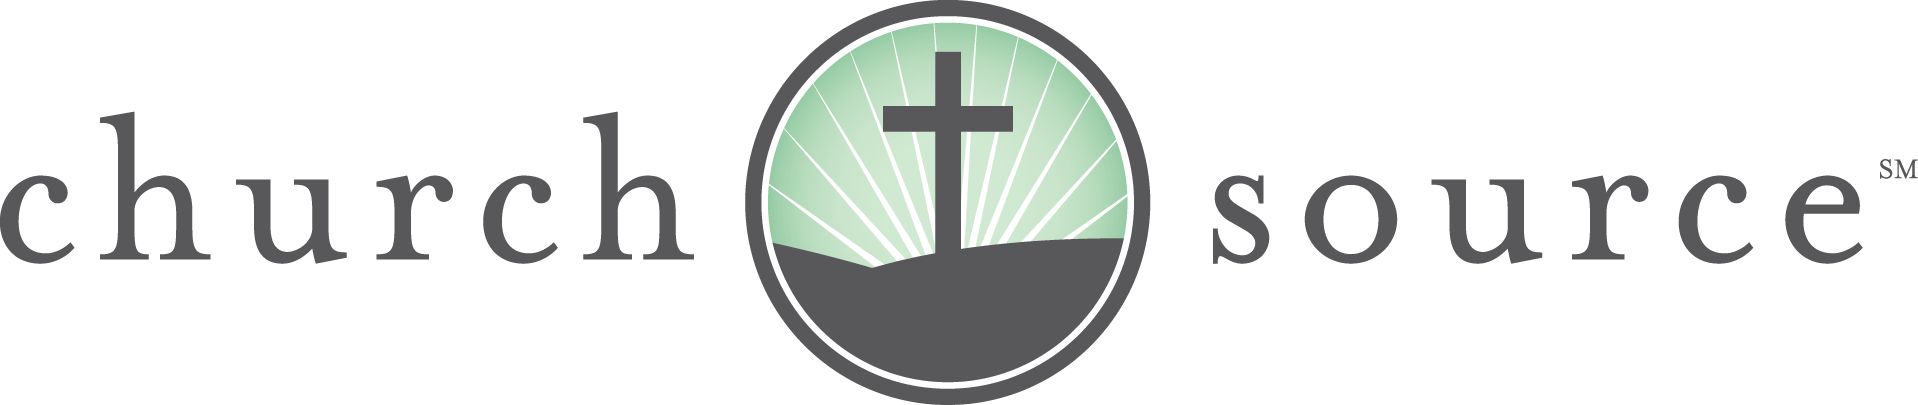 churchsource logo